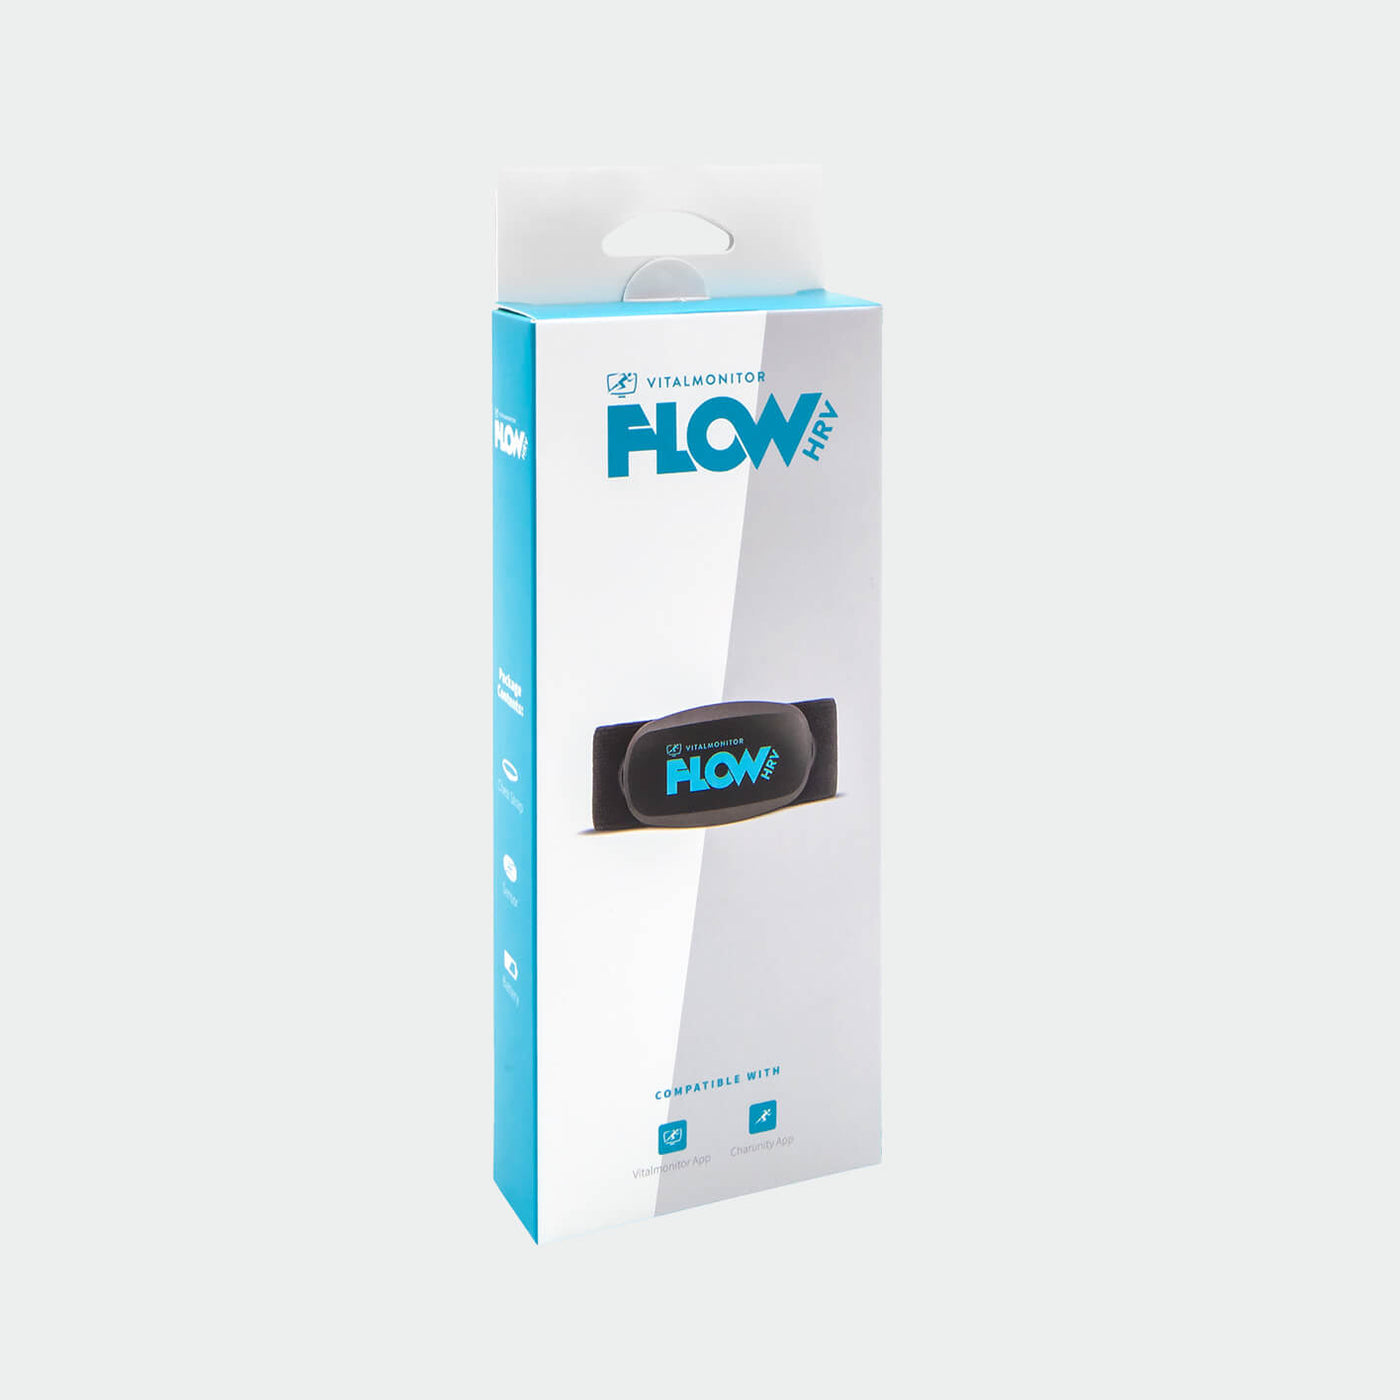 FLOW HRV